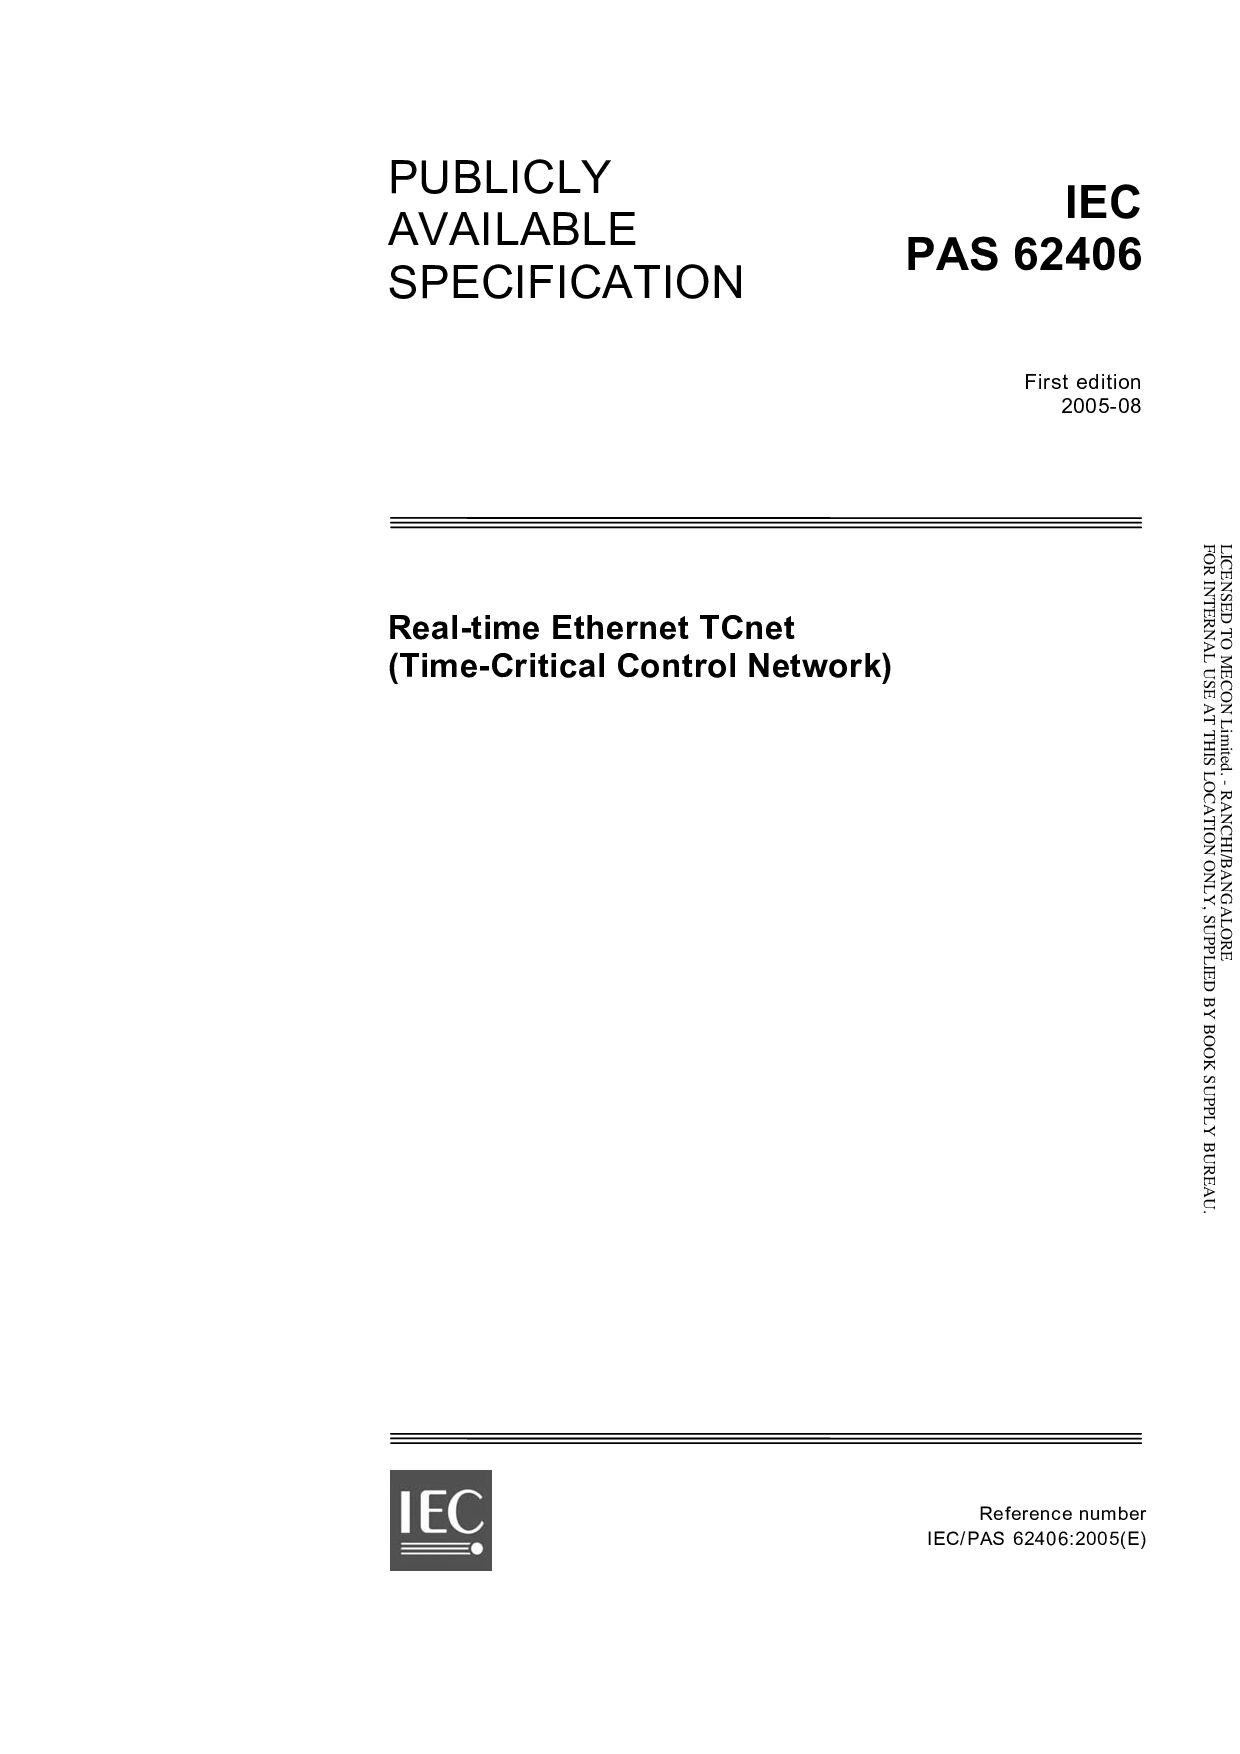 IEC PAS 62406:2005